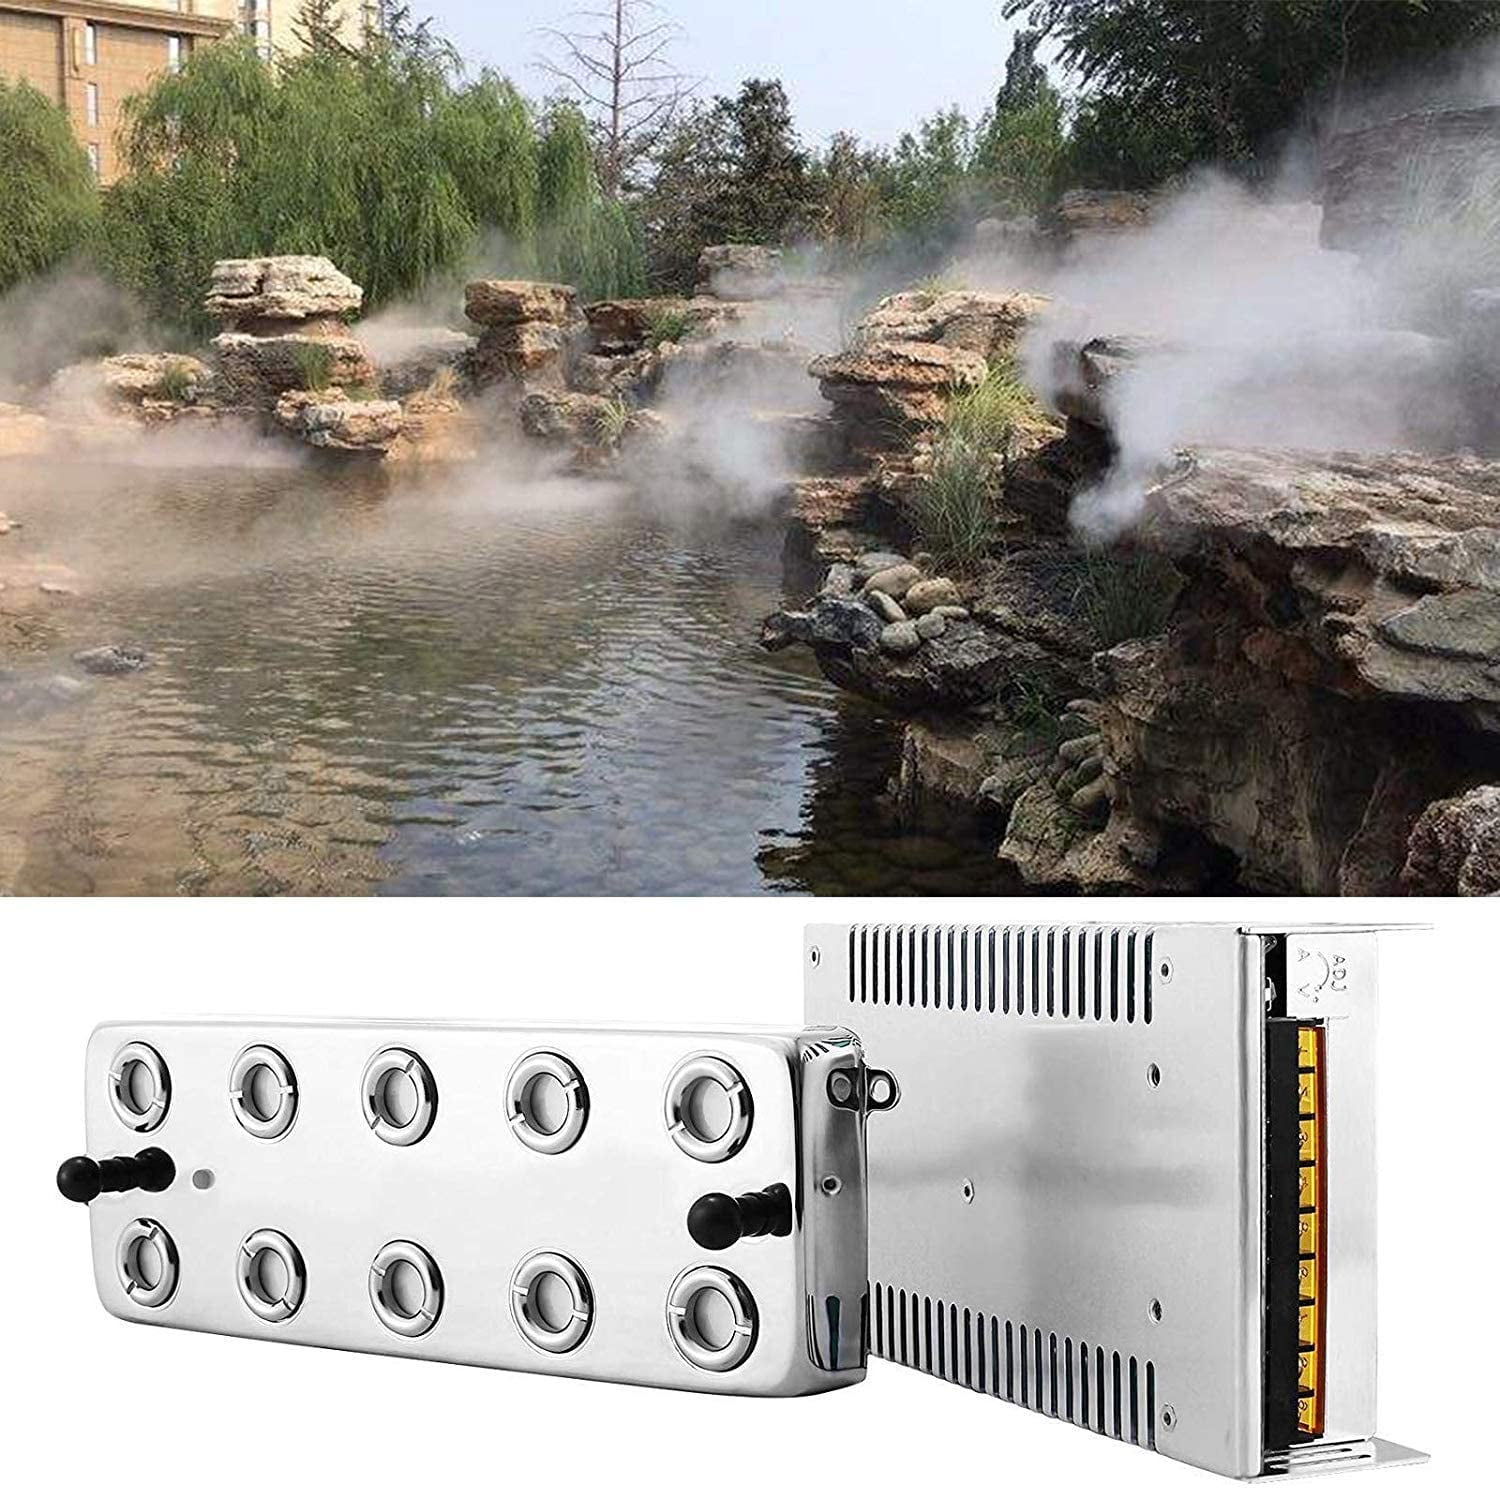 Details about   VEVOR Waterproof Ultrasonic Mist Maker 10 Head Ultrasonic Mist Fogger Humidifier 